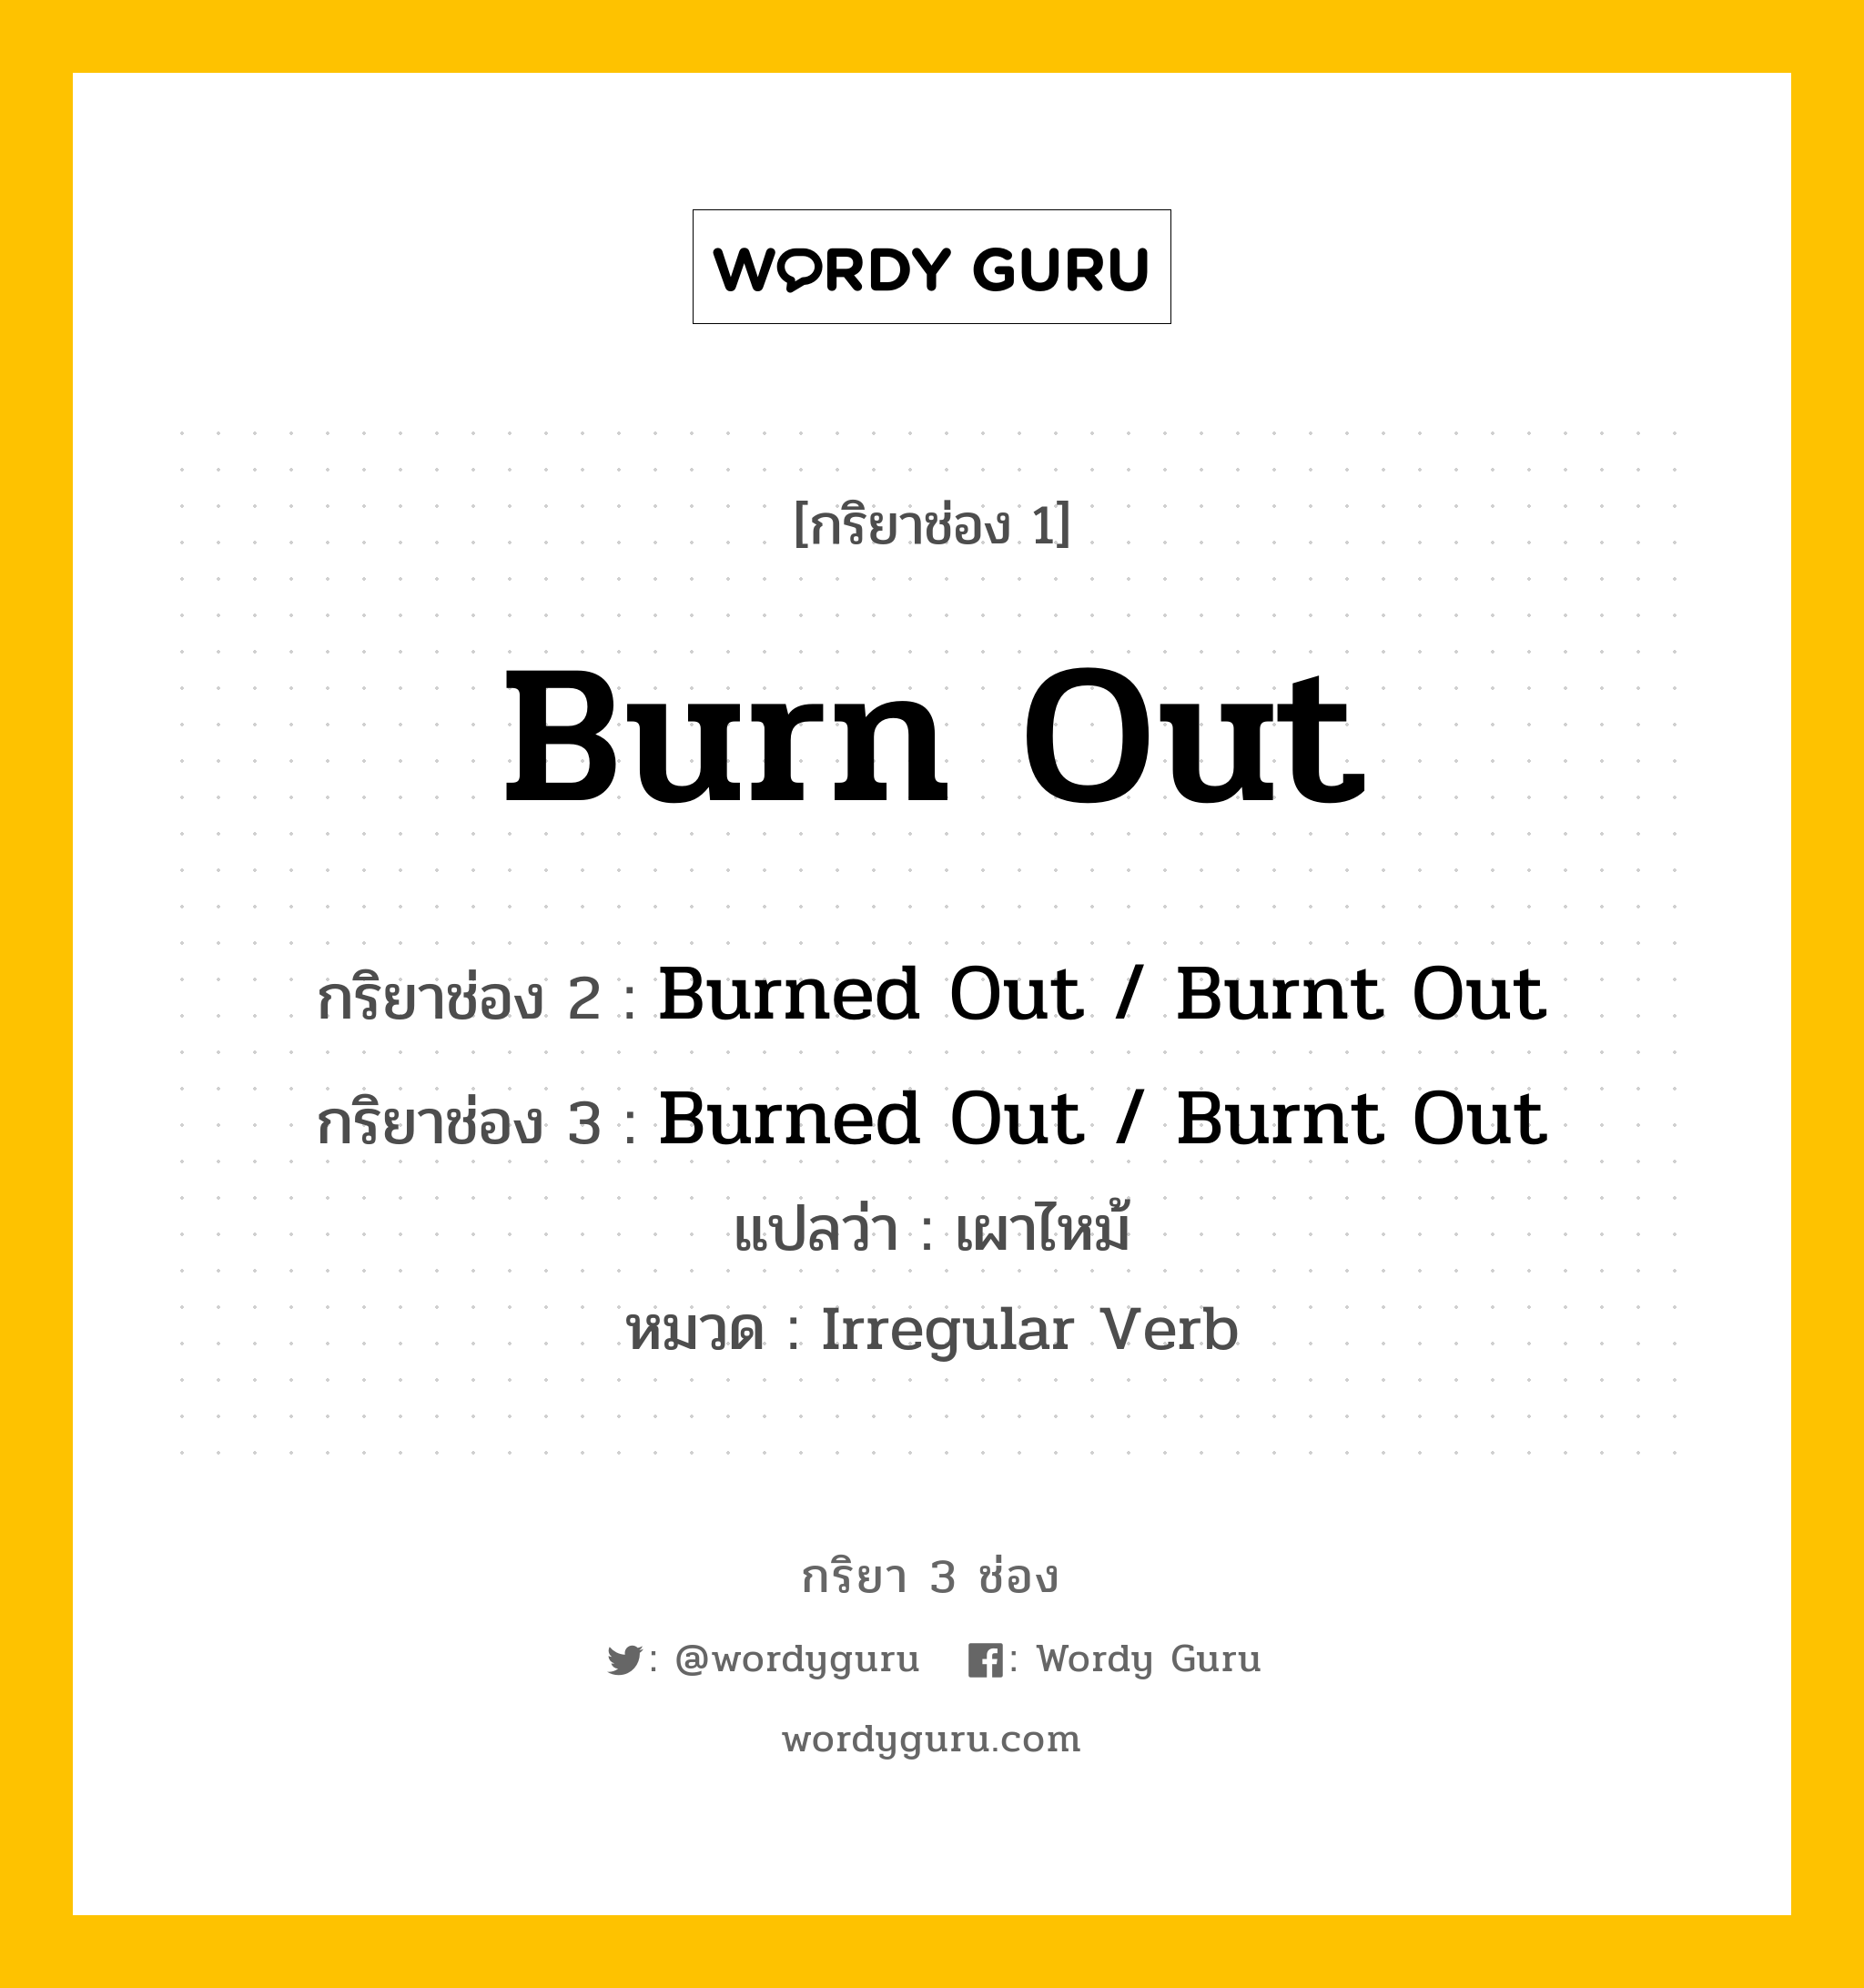 กริยา 3 ช่อง: Burn Out ช่อง 2 Burn Out ช่อง 3 คืออะไร, กริยาช่อง 1 Burn Out กริยาช่อง 2 Burned Out / Burnt Out กริยาช่อง 3 Burned Out / Burnt Out แปลว่า เผาไหม้ หมวด Irregular Verb หมวด Irregular Verb